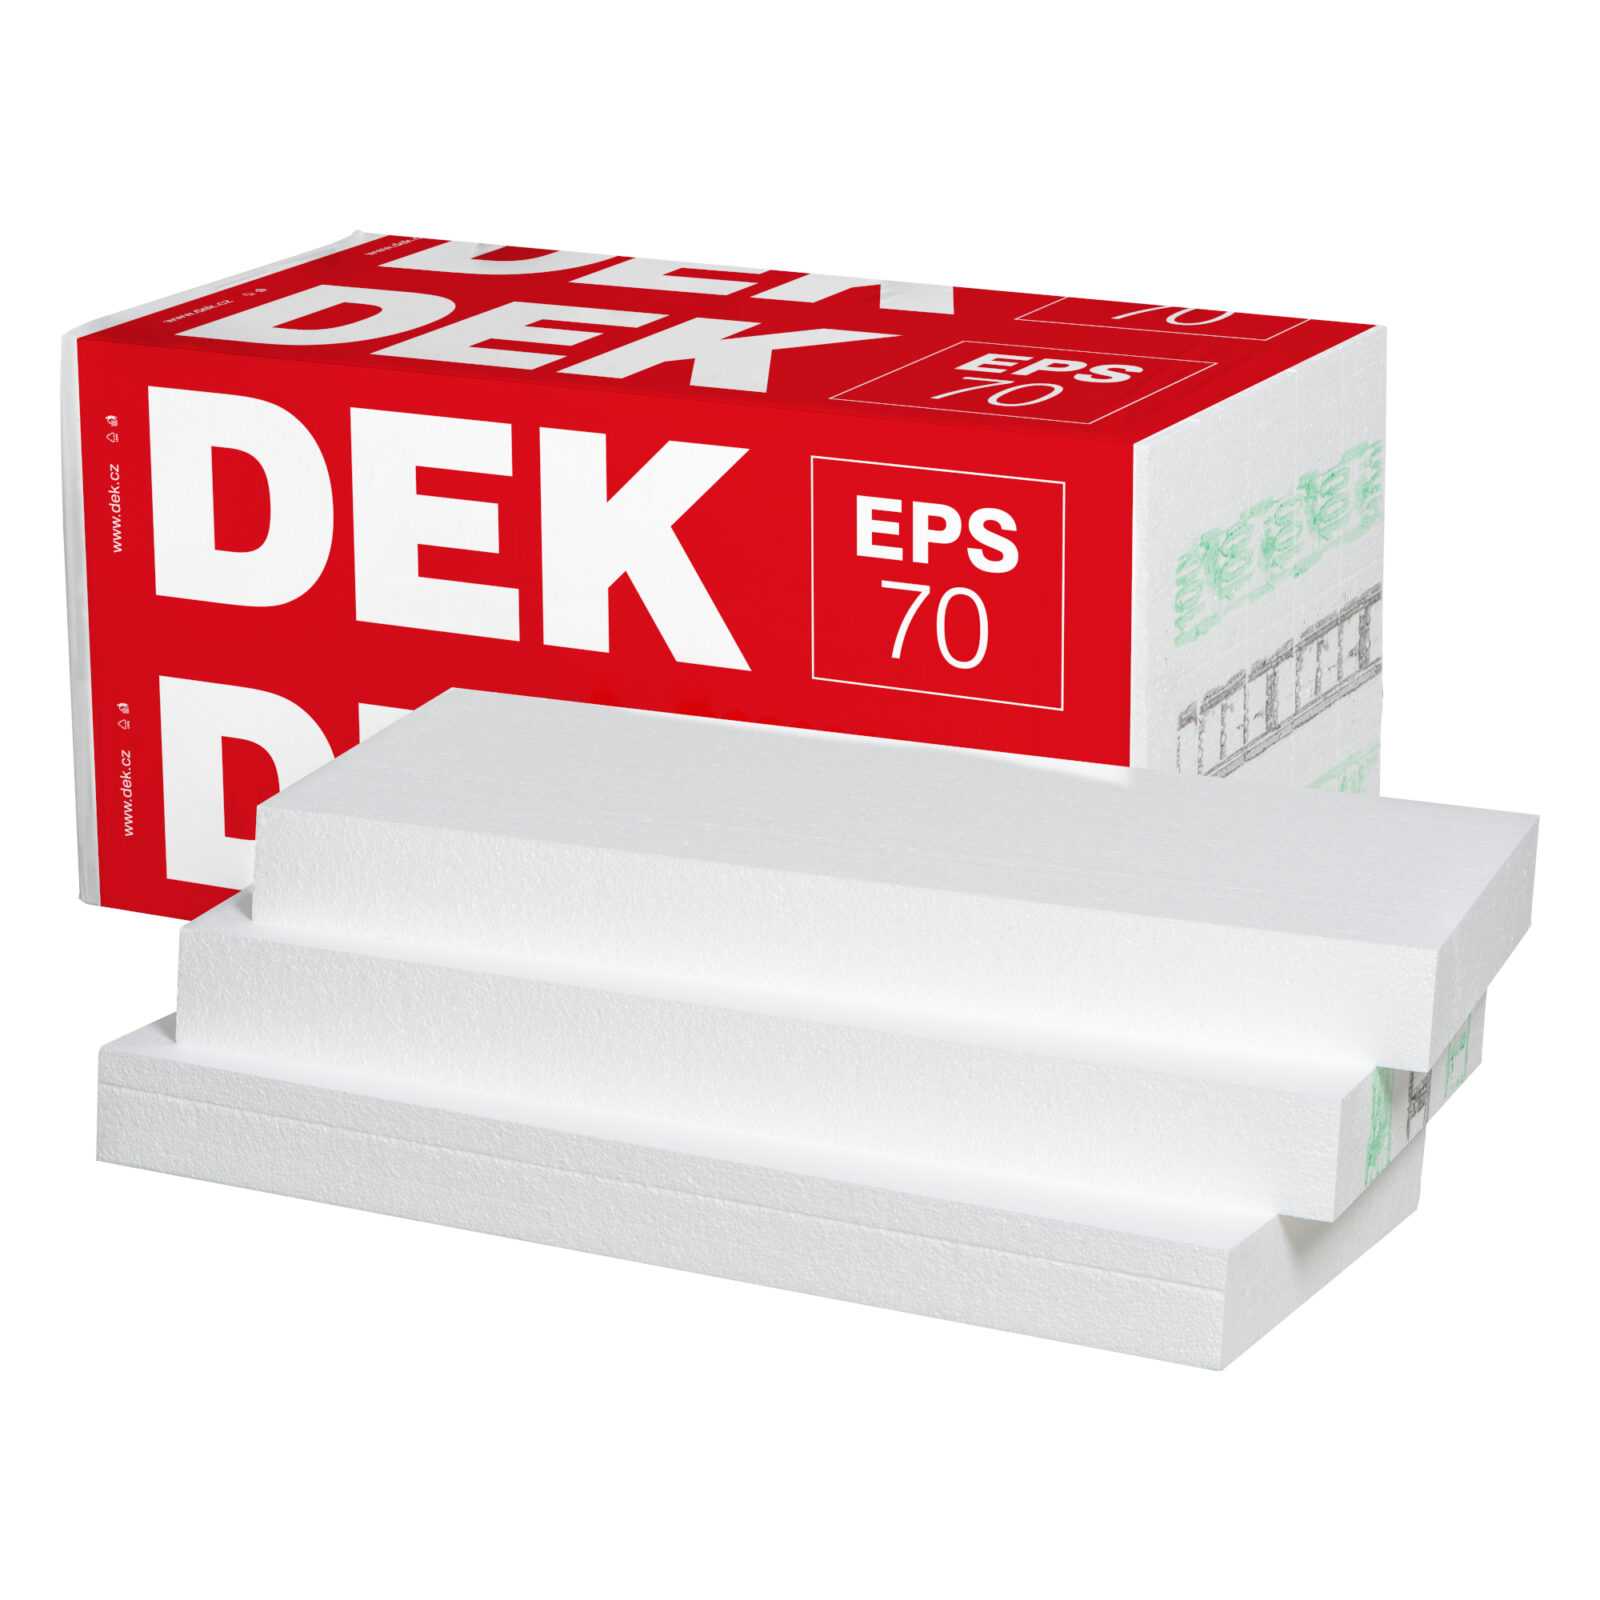 Tepelná izolace DEK EPS 70 F 130 mm (1